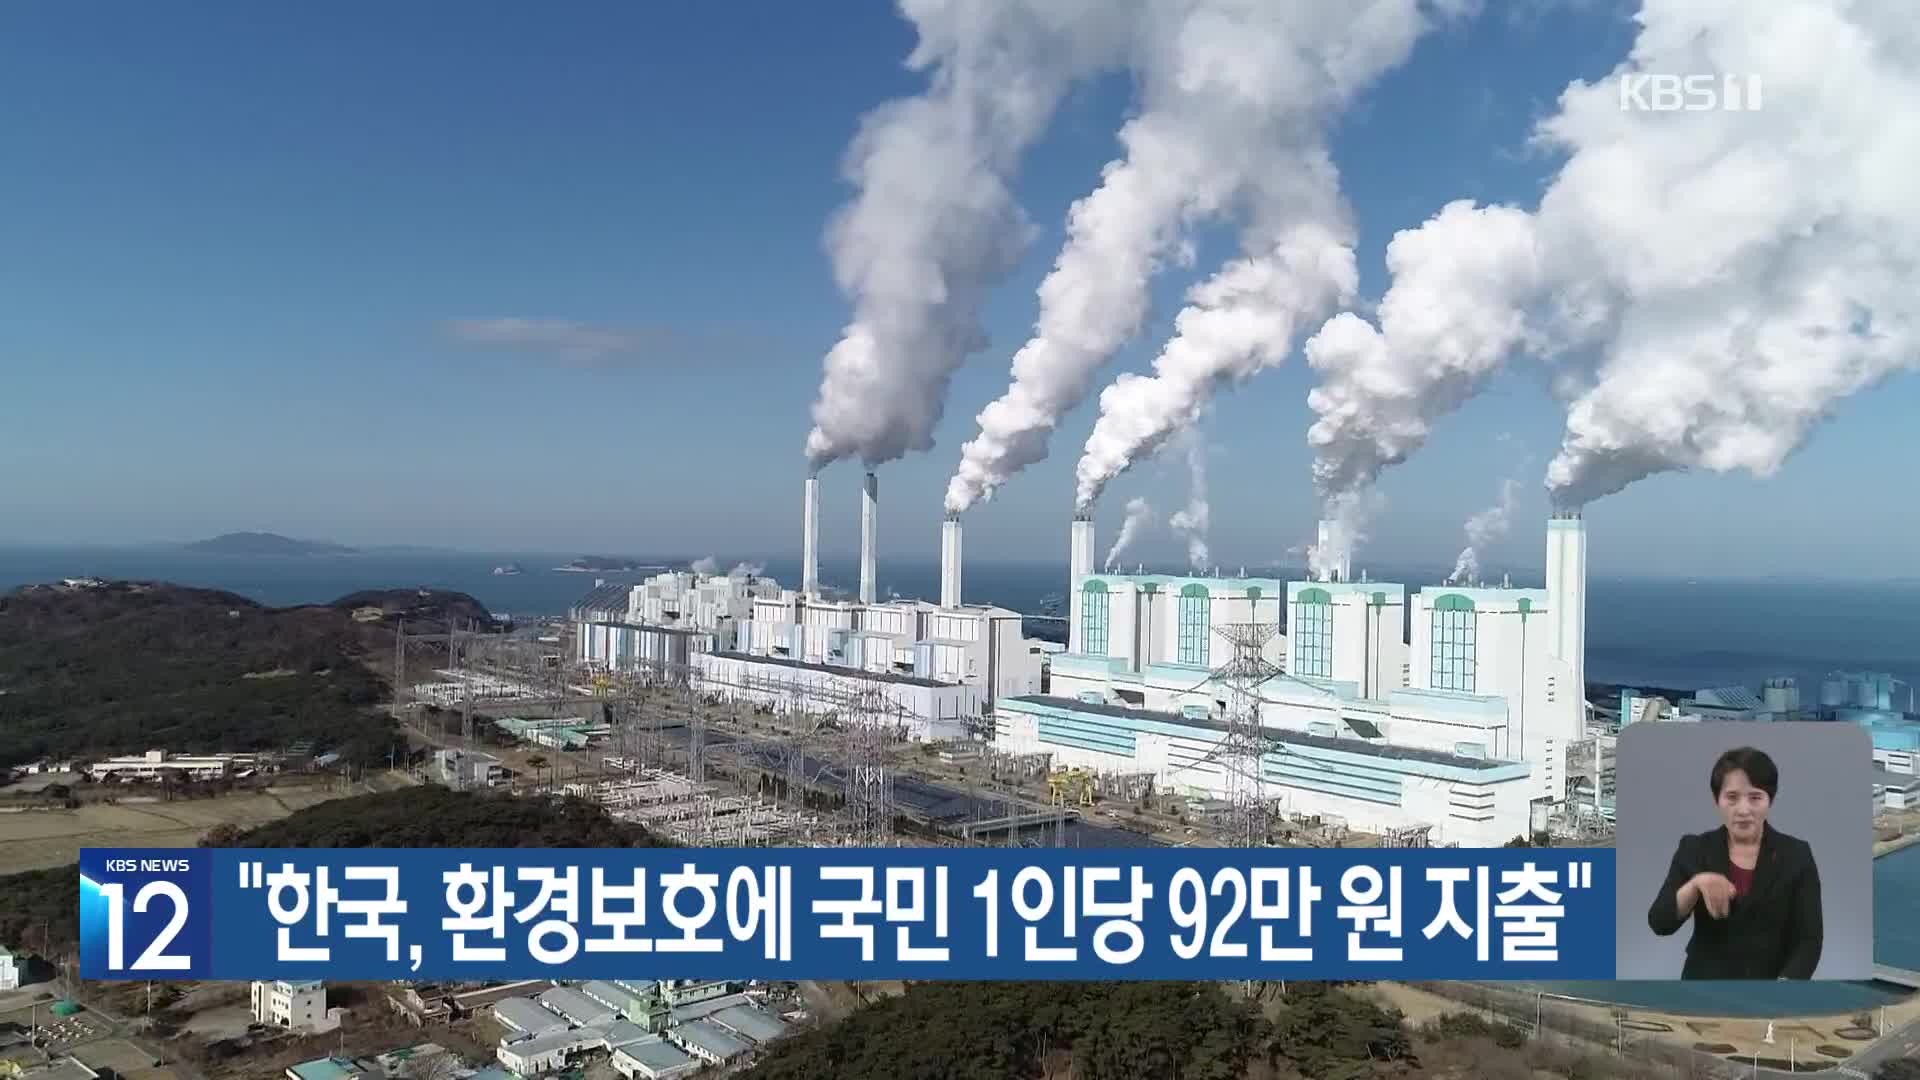 [기후는 말한다] “한국, 환경보호에 국민 1인당 92만 원 지출”